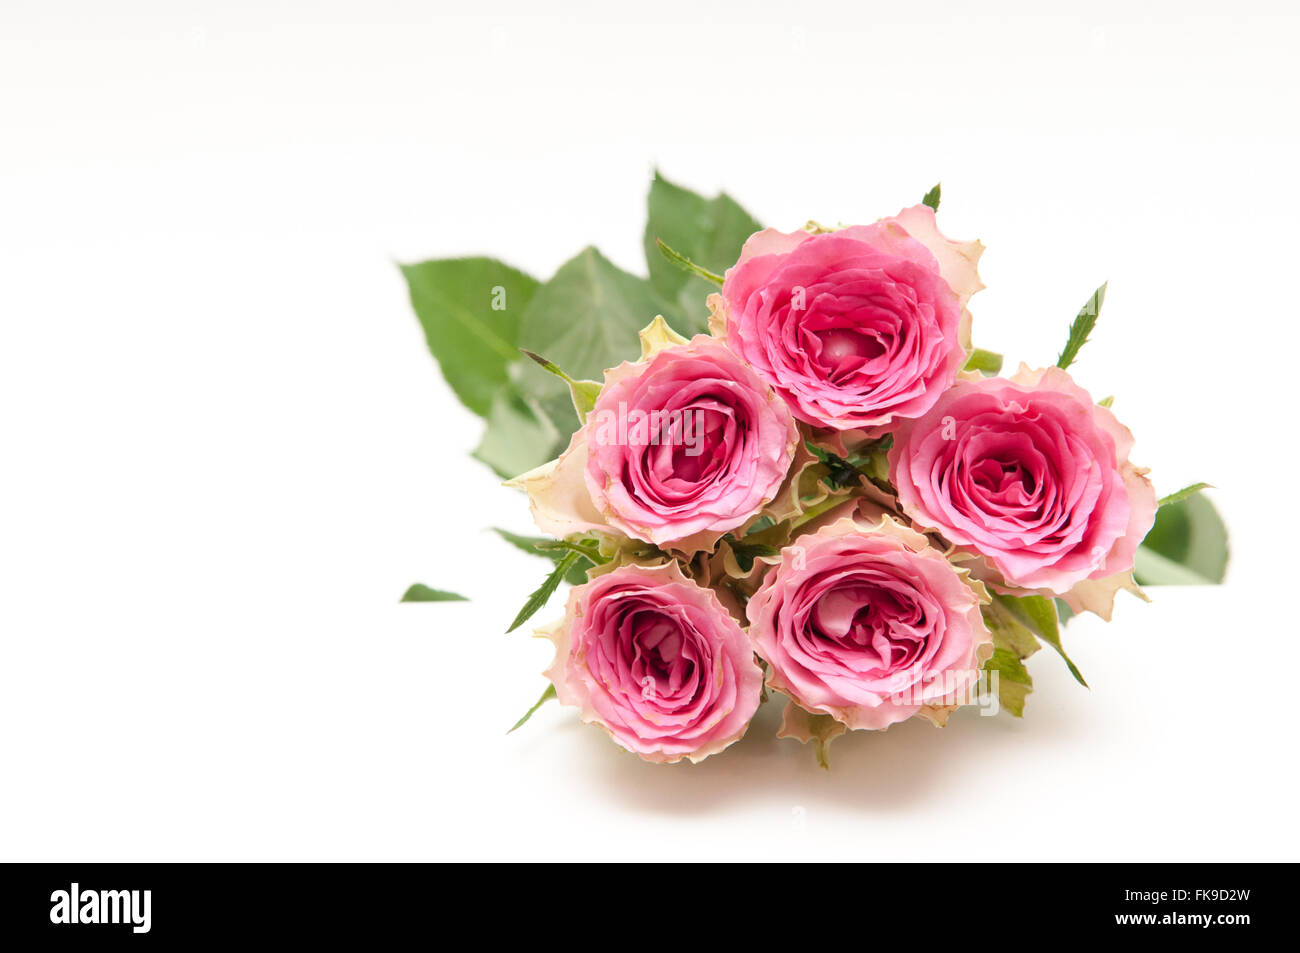 Anordnung von rosa Rosen mit dem Öffnen der Blüten auf einem hellen Hintergrund Stockfoto